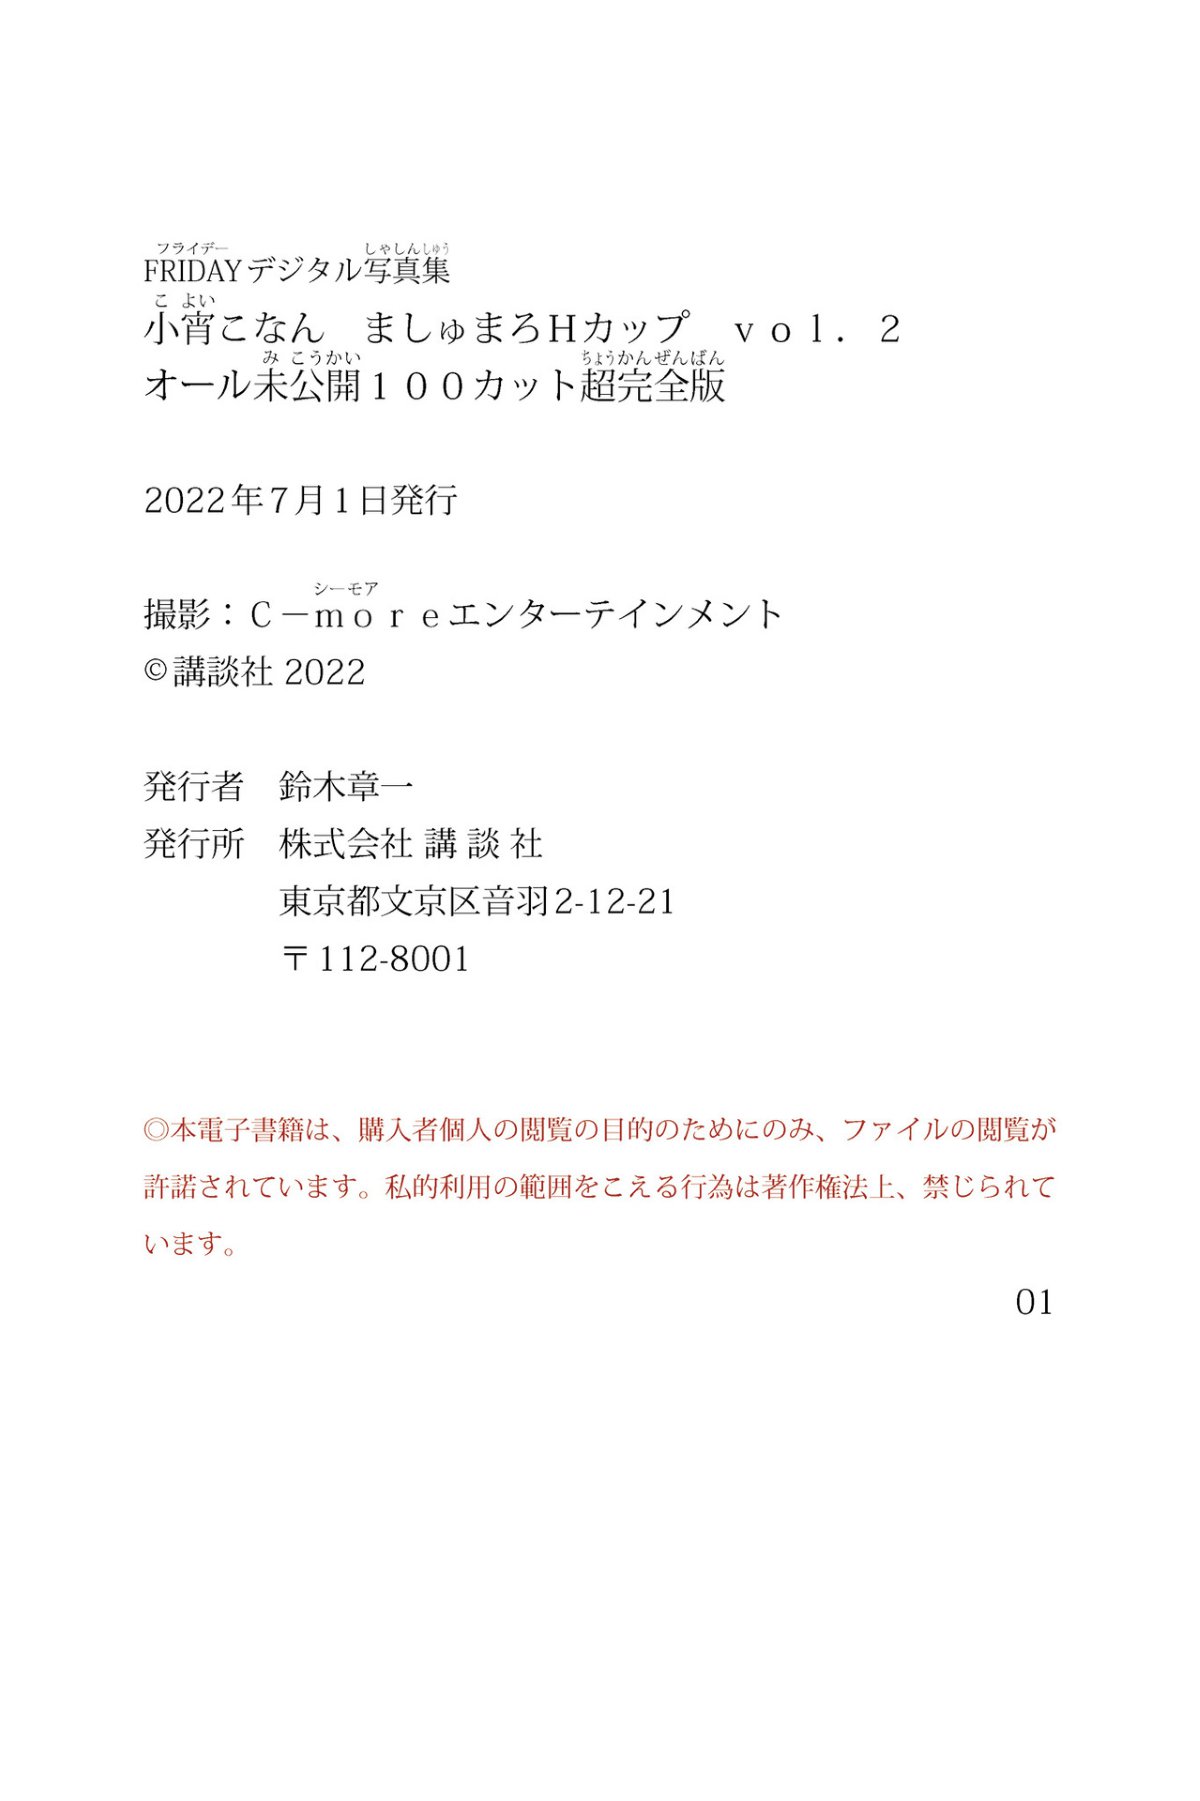 FRIDAY Digital Photobook Konan Koyoi 小宵こなん Marshmallow H Cup Vol 2 ましゅまろＨカップ Vol 2 2022 06 10 0078 4952252539.jpg